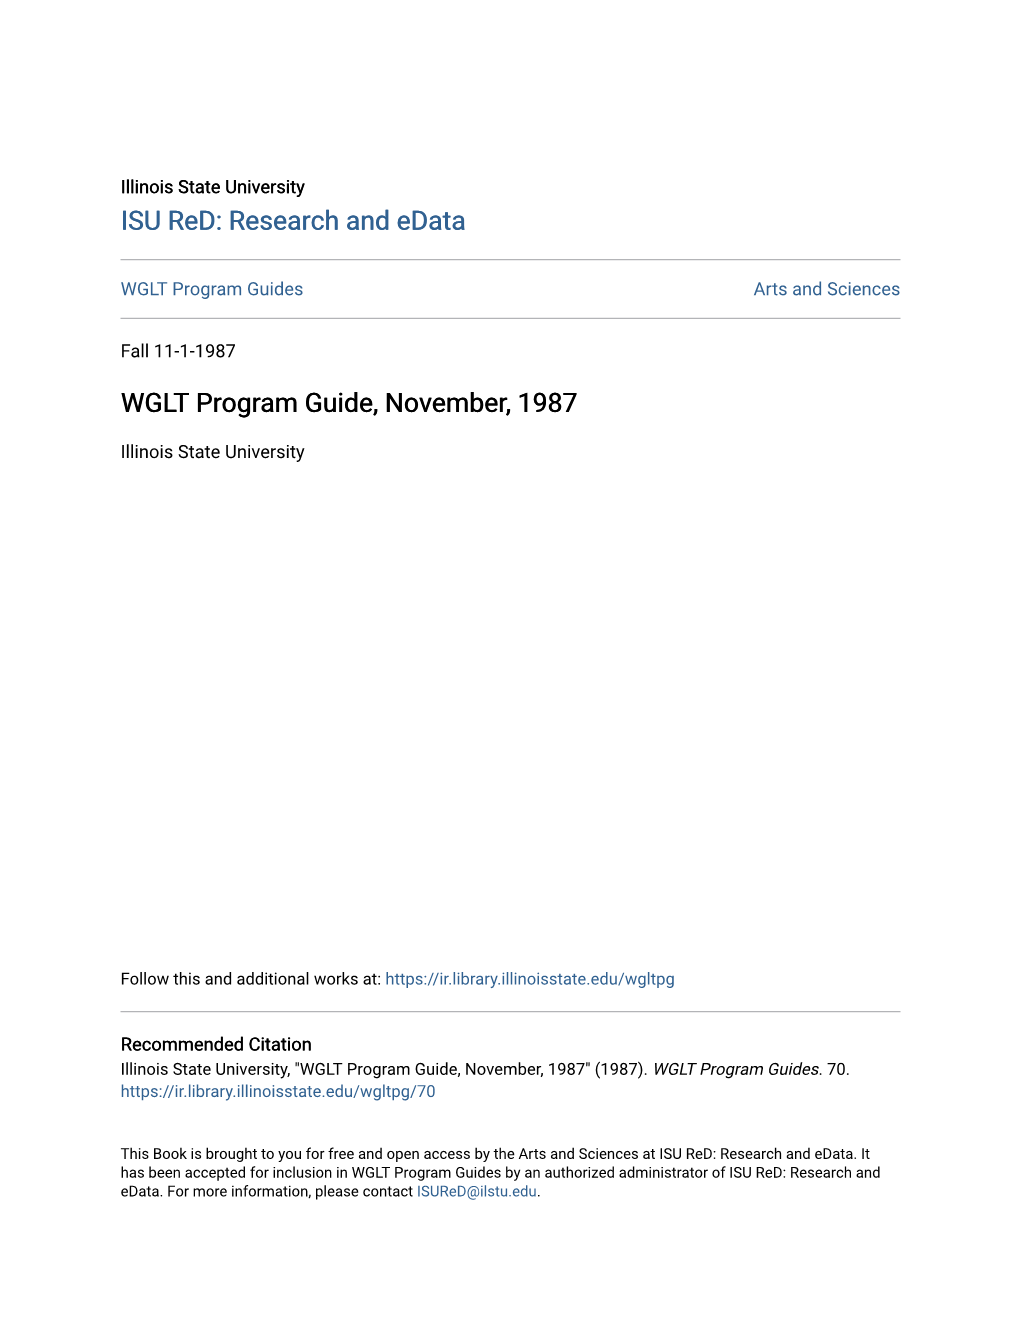 WGLT Program Guide, November, 1987